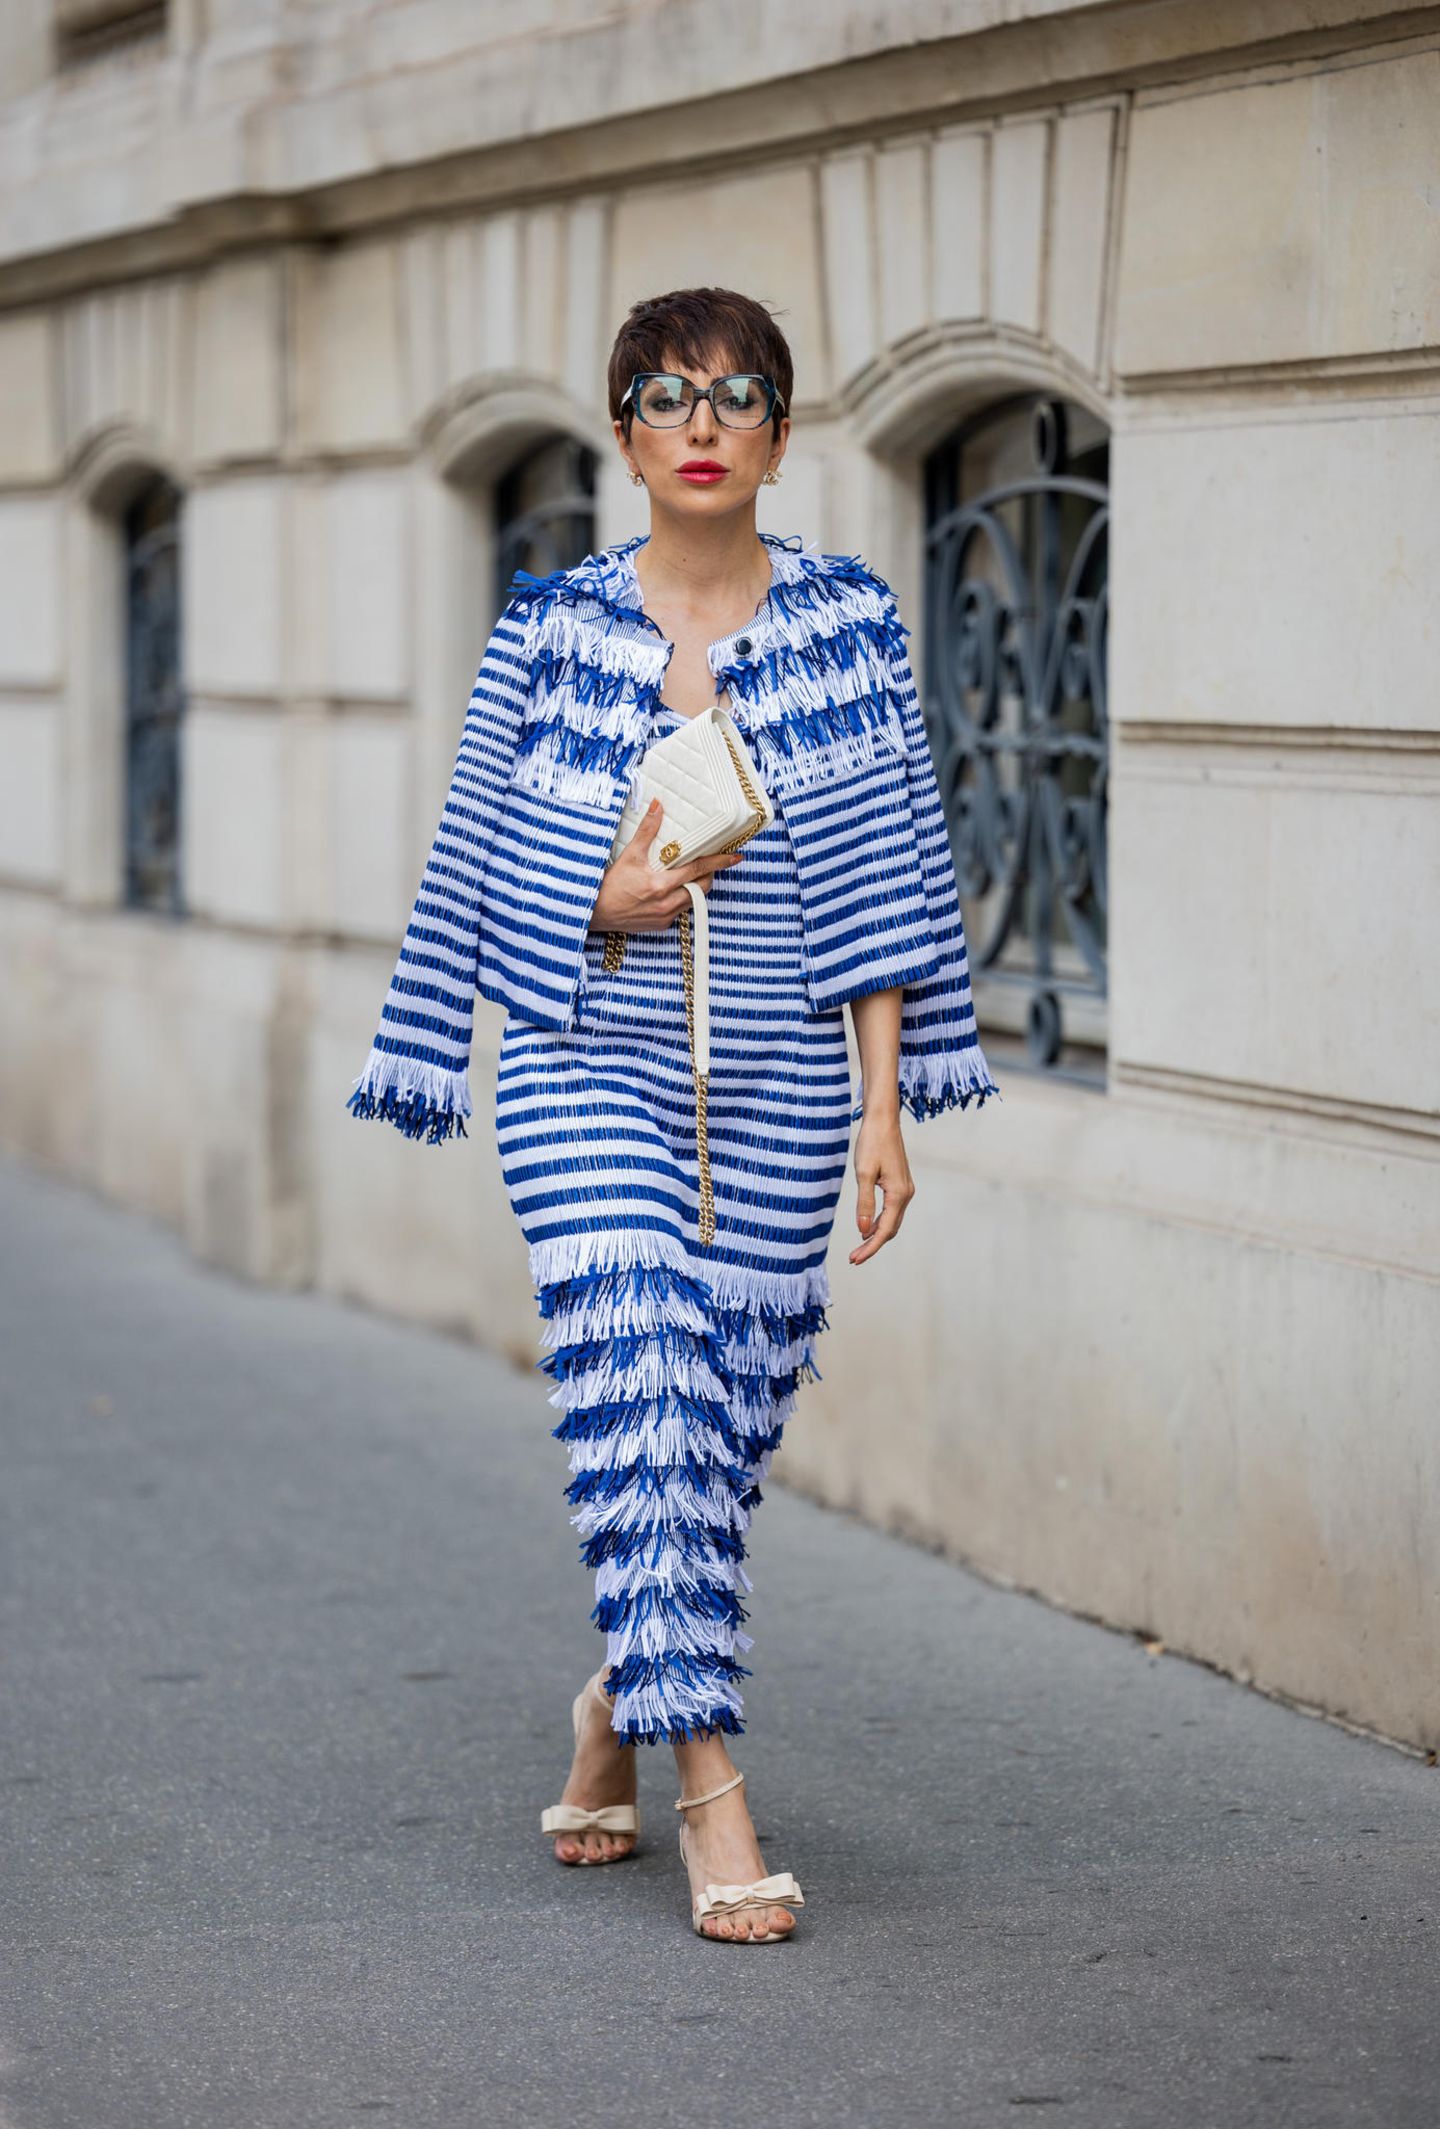 Bloggerin Salome Chaboki interpretiert bei der Haute Couture Week in Paris den Marine-Look neu. Kein Strick- oder Breton-Pullover, dafür Fransen und eine kleine Chanel-Bag. Süßes Detail: die Heels mit Schleife. 